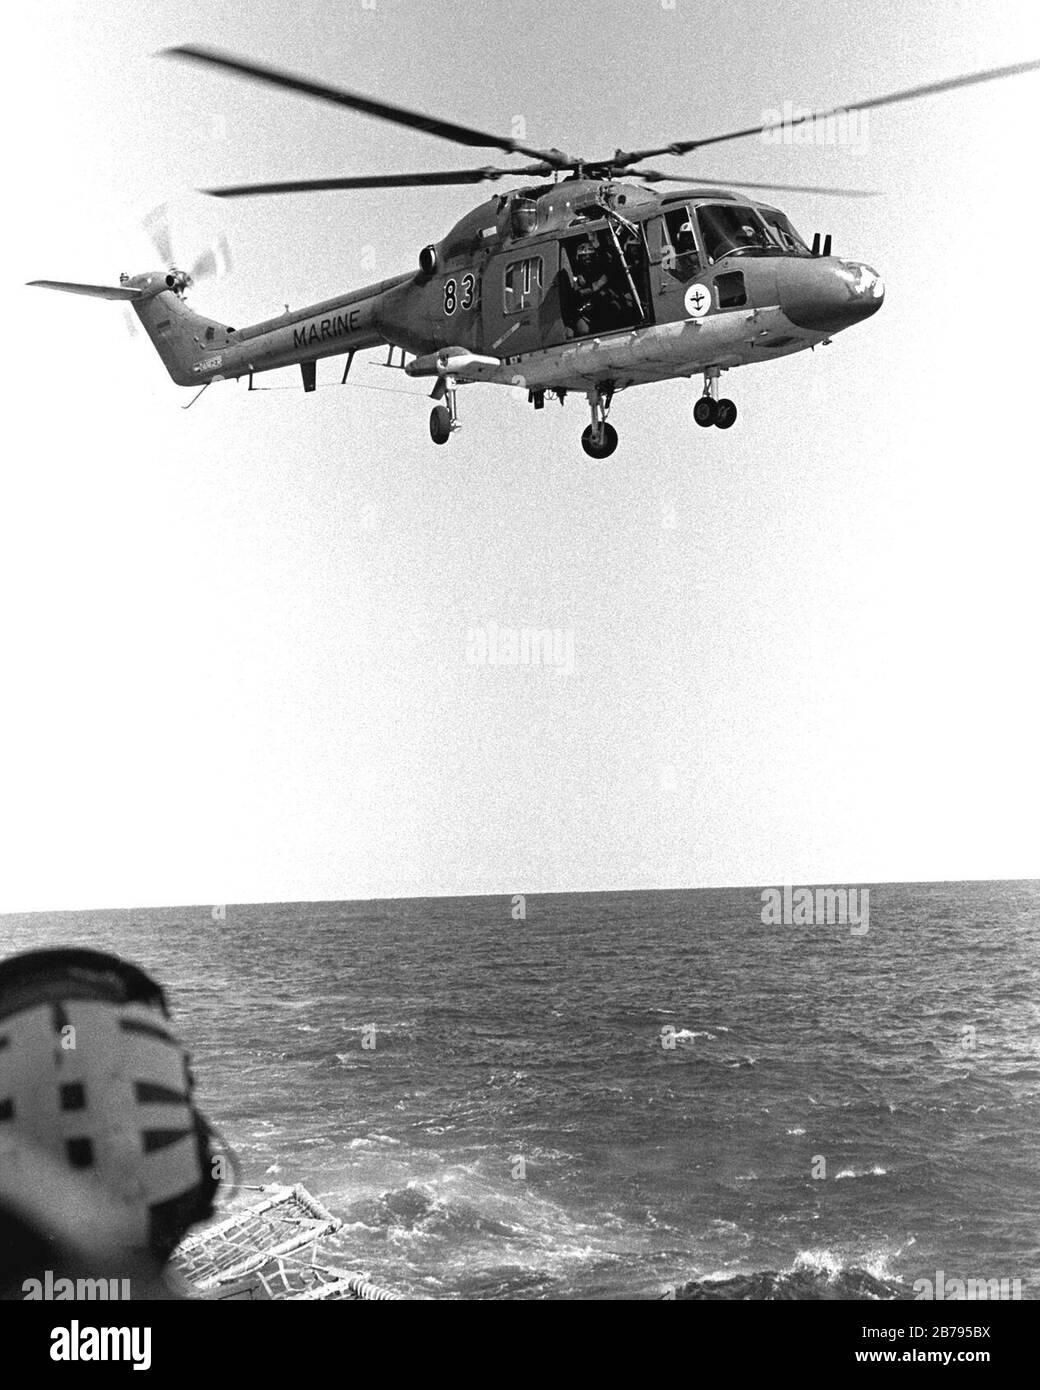 German Sea Lynx approaching USS Stark (FFG-31) in 1990. Stock Photo